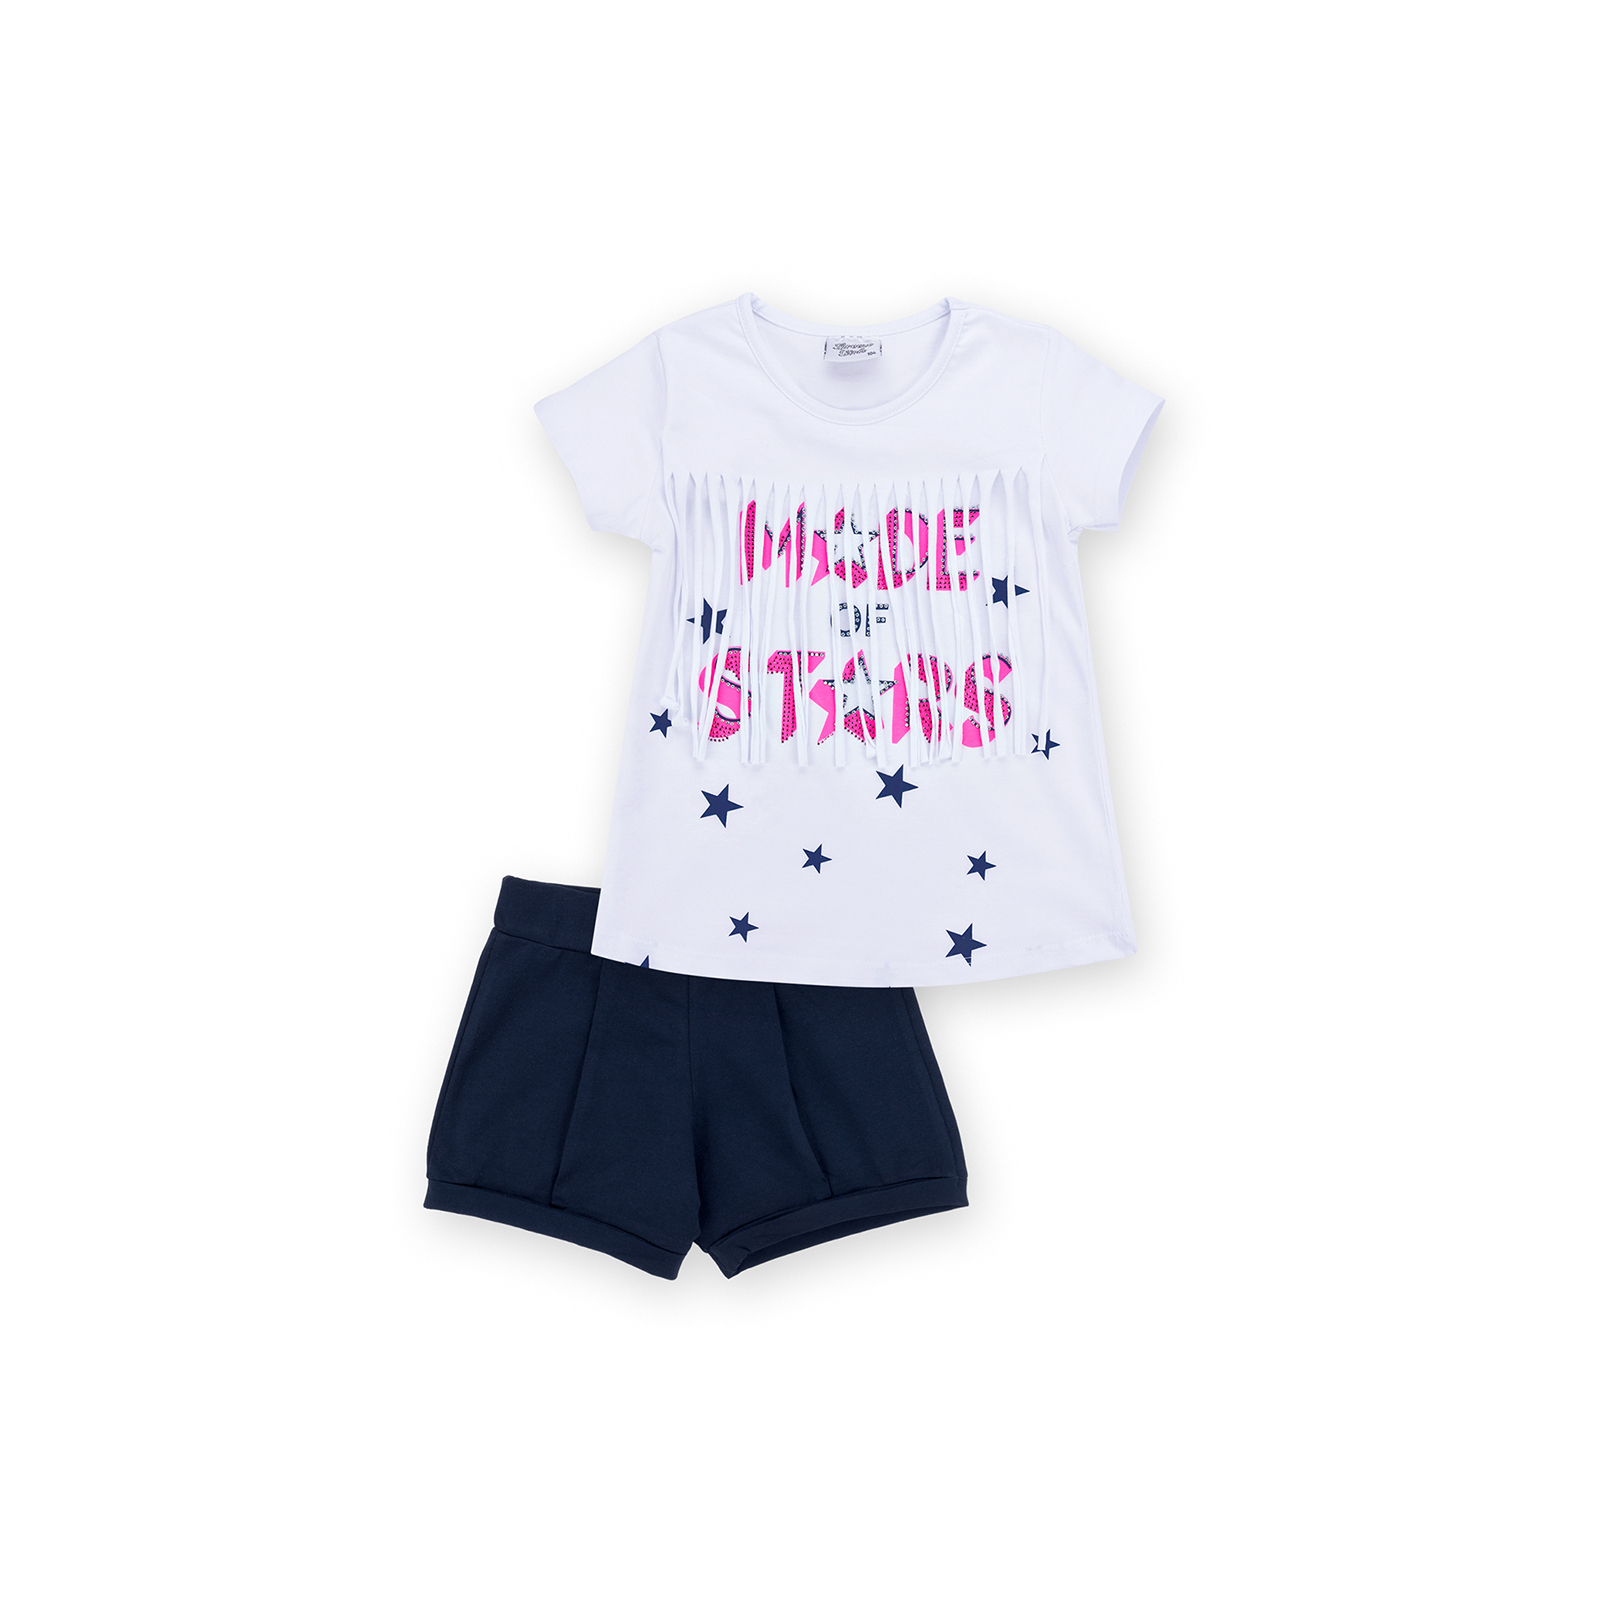 Набор детской одежды Breeze футболка со звездочками с шортами (9036-110G-white)